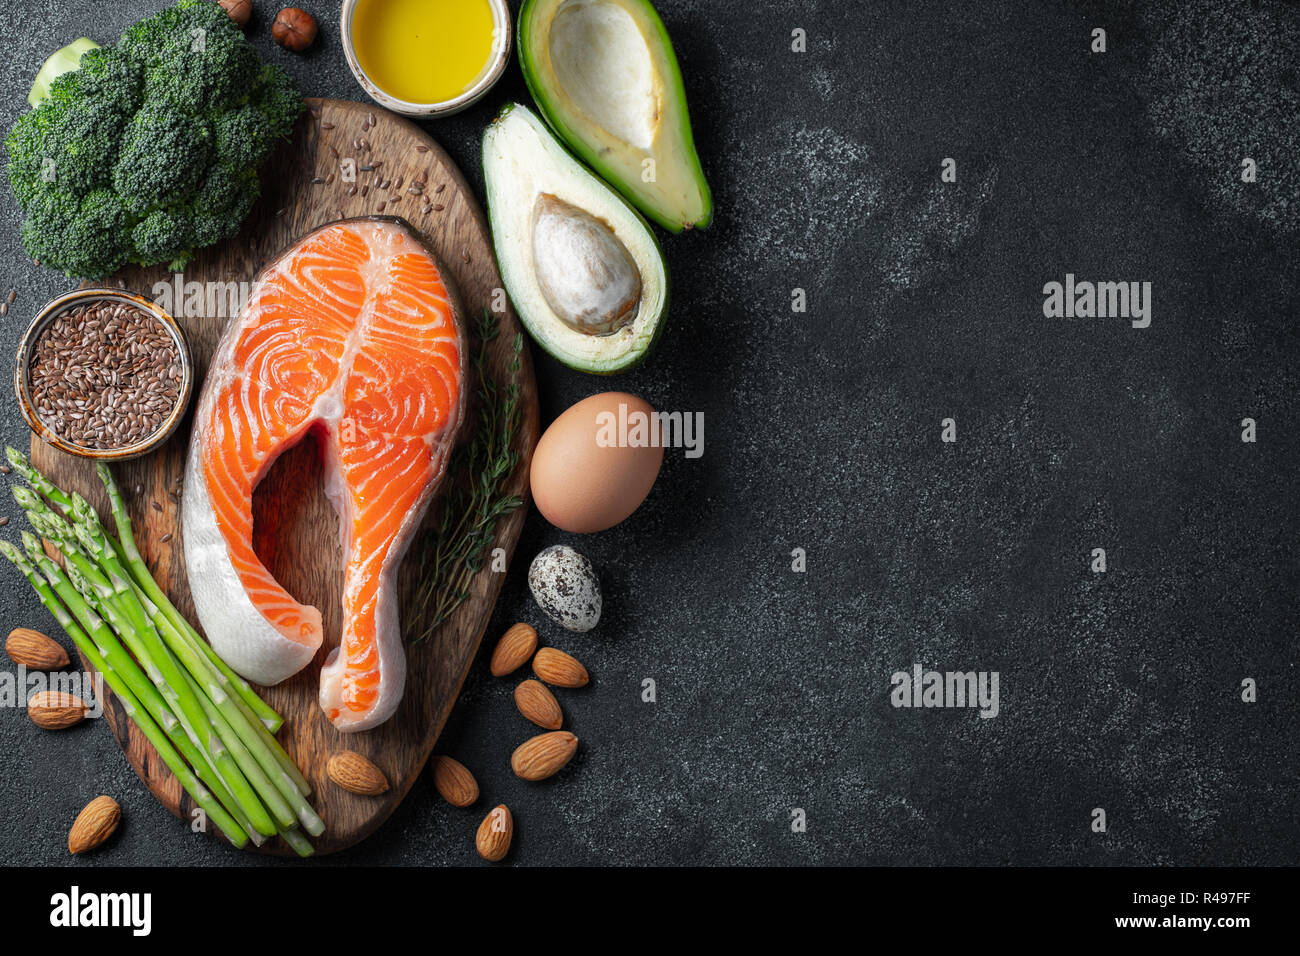 Eine Reihe von gesunden Lebensmitteln für keto Diät auf einem dunklen Hintergrund. Frische rohe Lachssteak mit Leinsamen, Brokkoli, Avocado, Huhn Eier, Nüsse und Spargel auf einem Holzbrett. Ansicht von oben mit der Kopie Raum Stockfoto